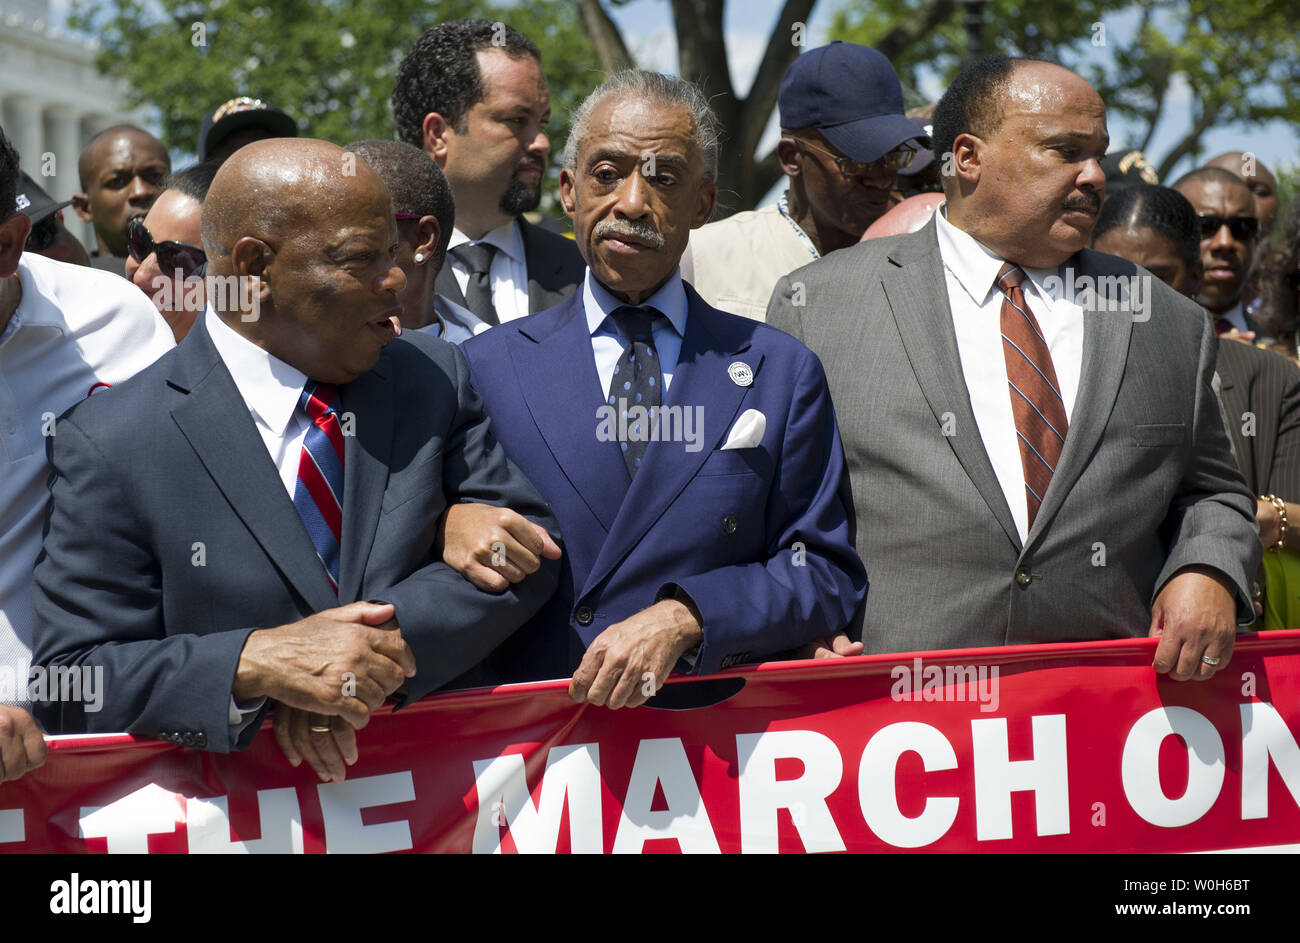 Civil Rights leader, von links nach rechts, von John Lewis (R-GA), Reverend Al Sharpton und Martin Luther King III Teilnahme an einem Marsch zum Gedenken an den 50. Jahrestag der Marsch auf Washington und Dr. Martin Luther King Jr.'s "Ich habe einen Traum' Rede, in der Nähe des Lincoln Memorial in Washington, D.C. am 24. August 2013. Zehntausende von zivilen Rechten Unterstützer versammelten sich auf der National Mall das 50-jährige Jubiläum zu feiern. UPI/Kevin Dietsch Stockfoto